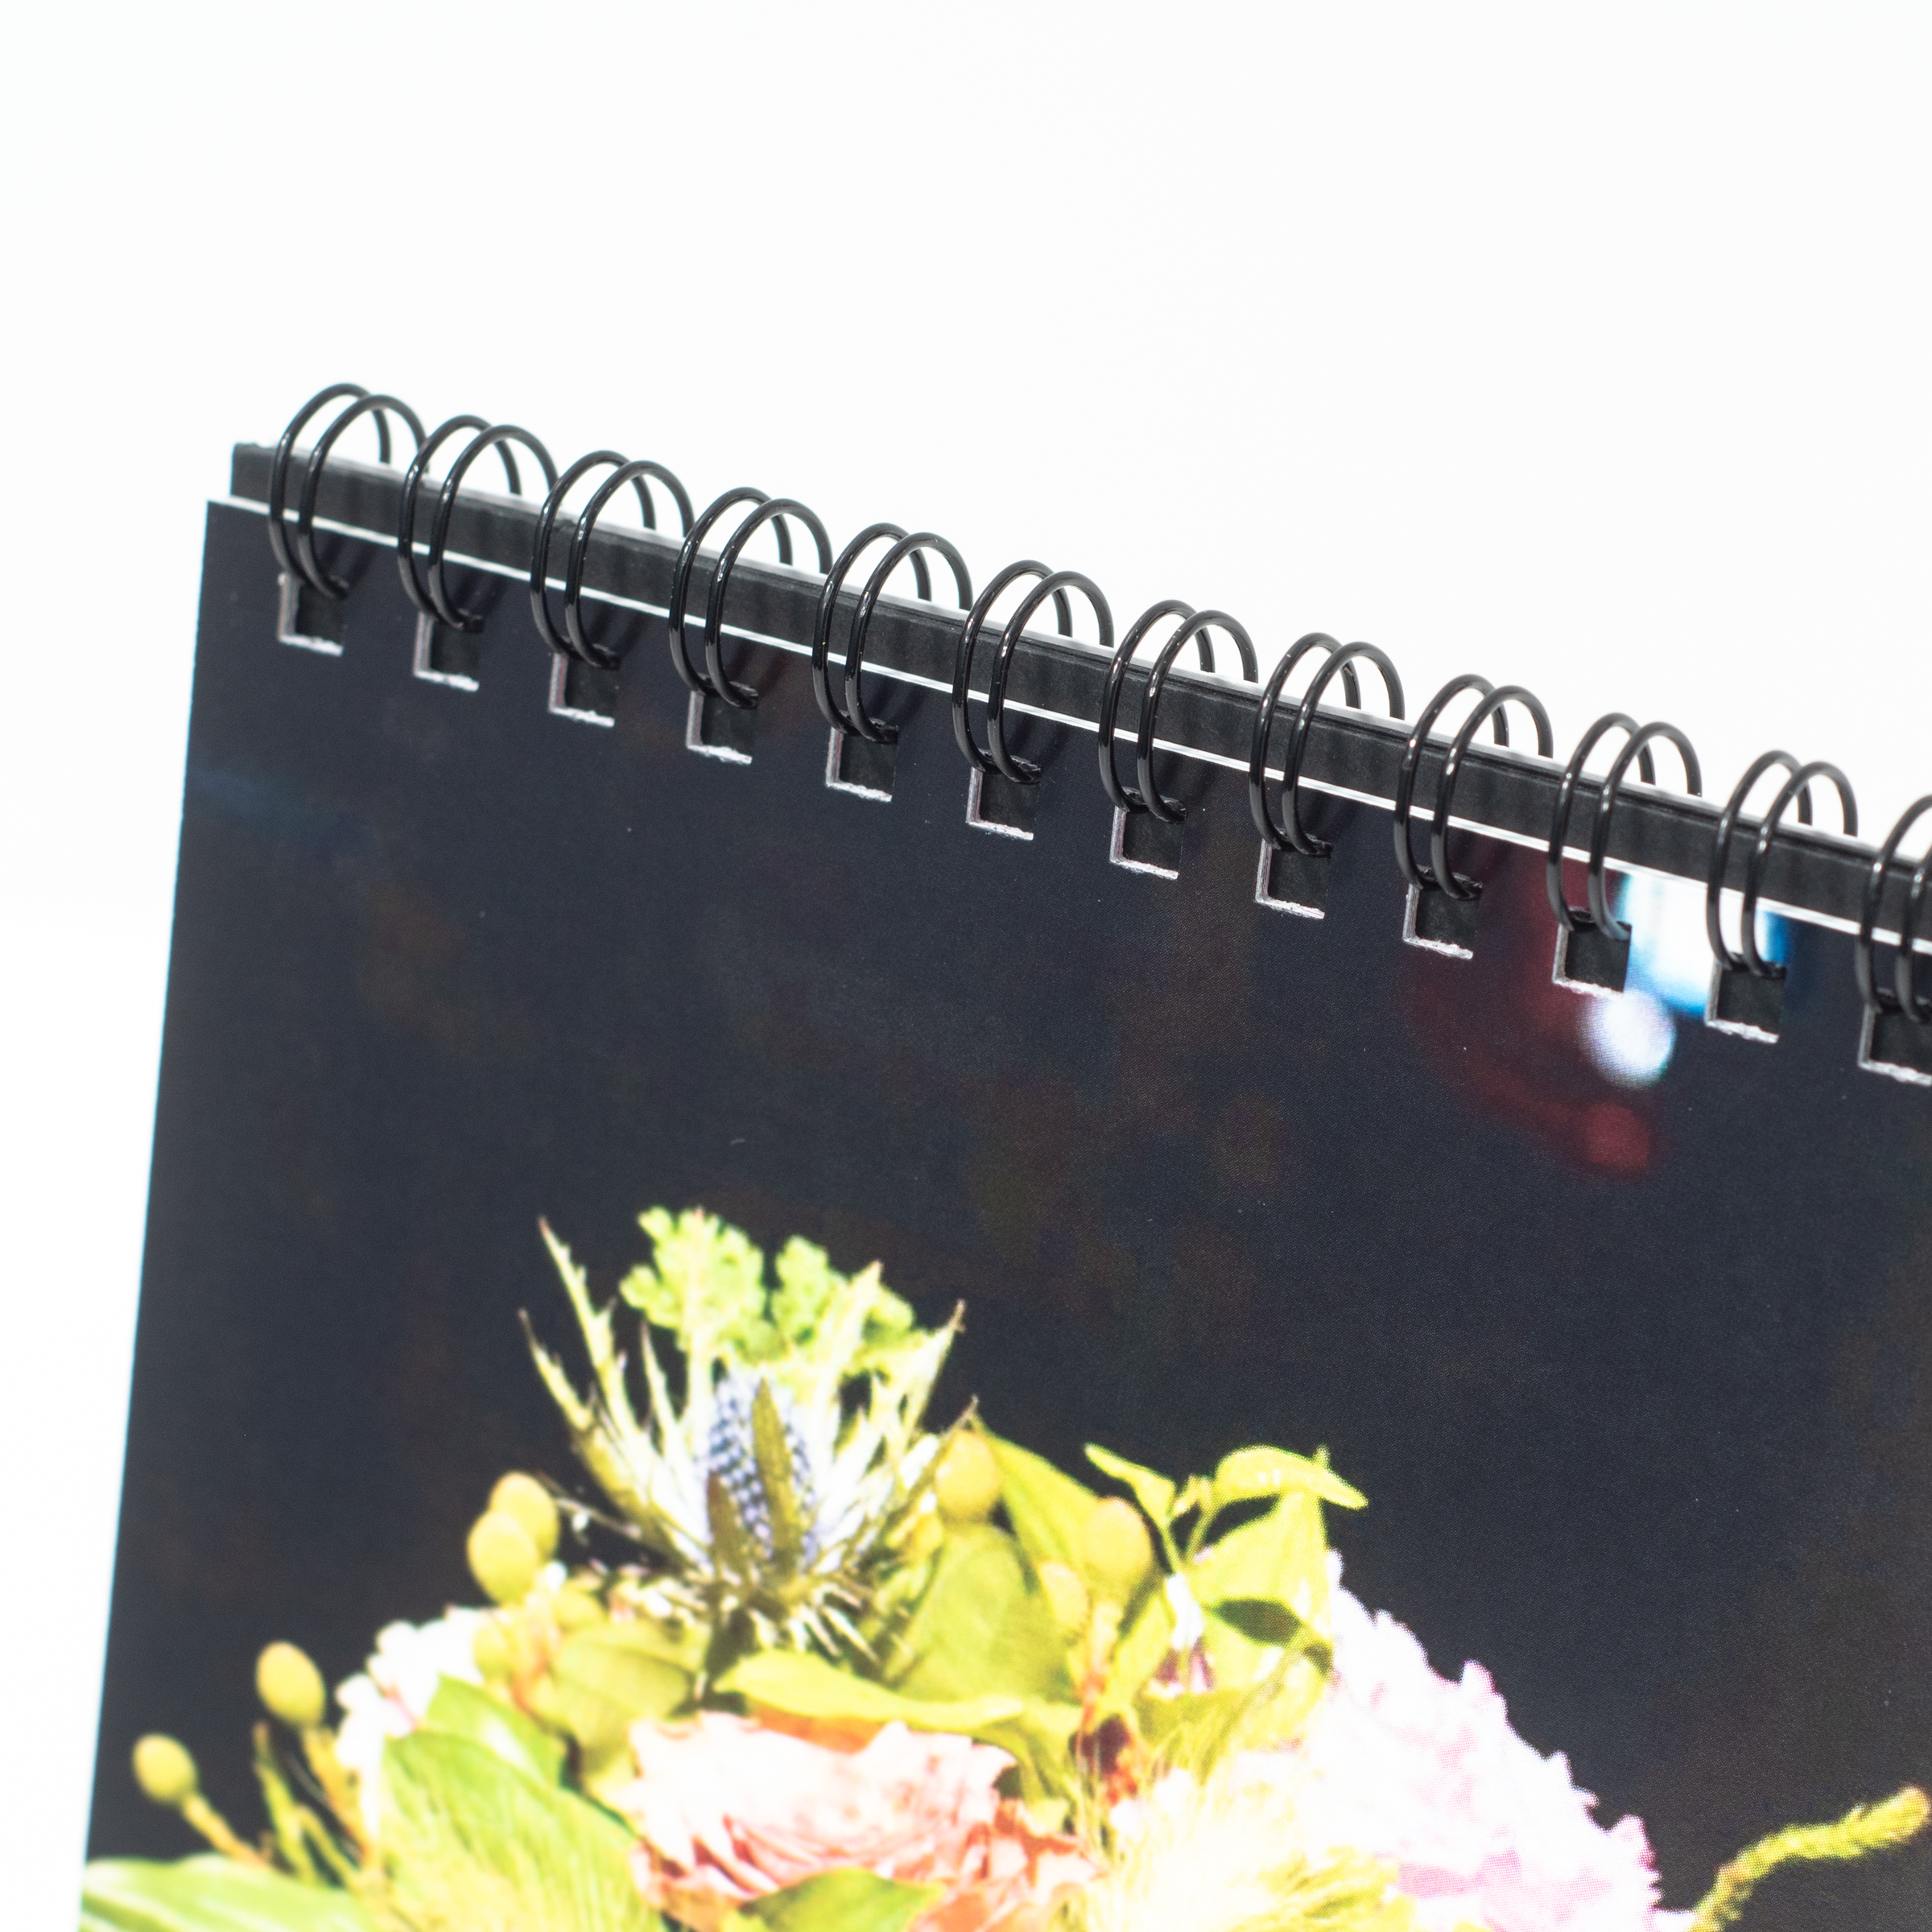 「LINDA OF FLOWER 様」製作のオリジナルカレンダー ギャラリー写真3